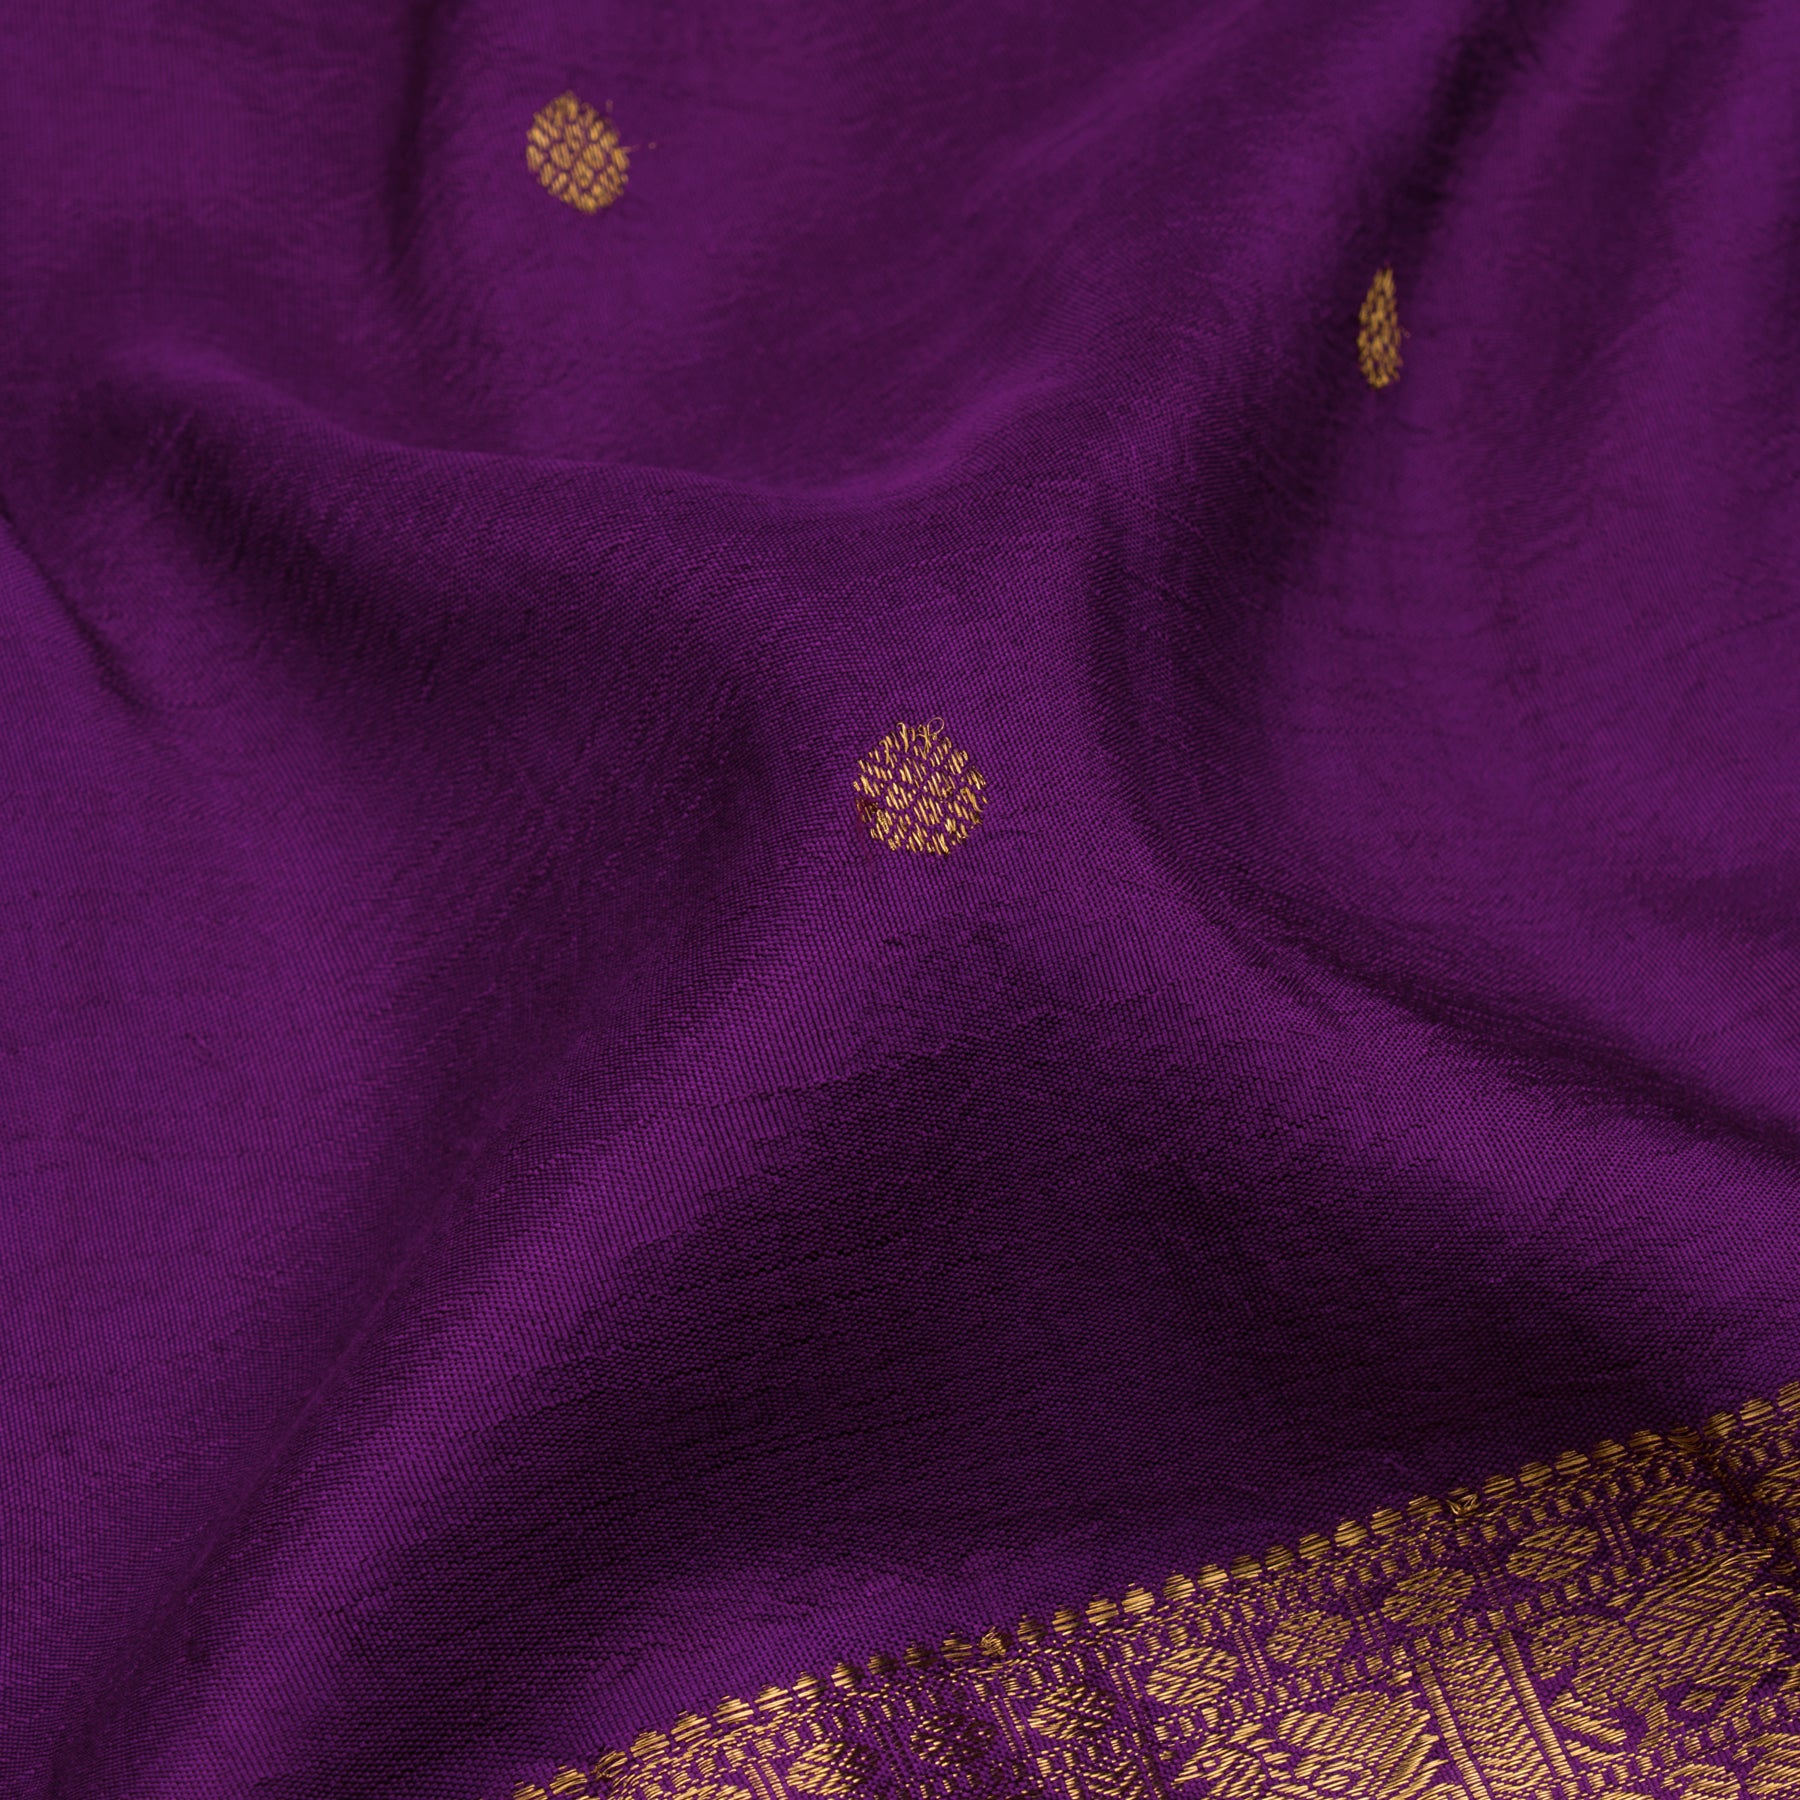 Kanakavalli Kanjivaram Silk Sari 22-110-HS001-13942 - Fabric View